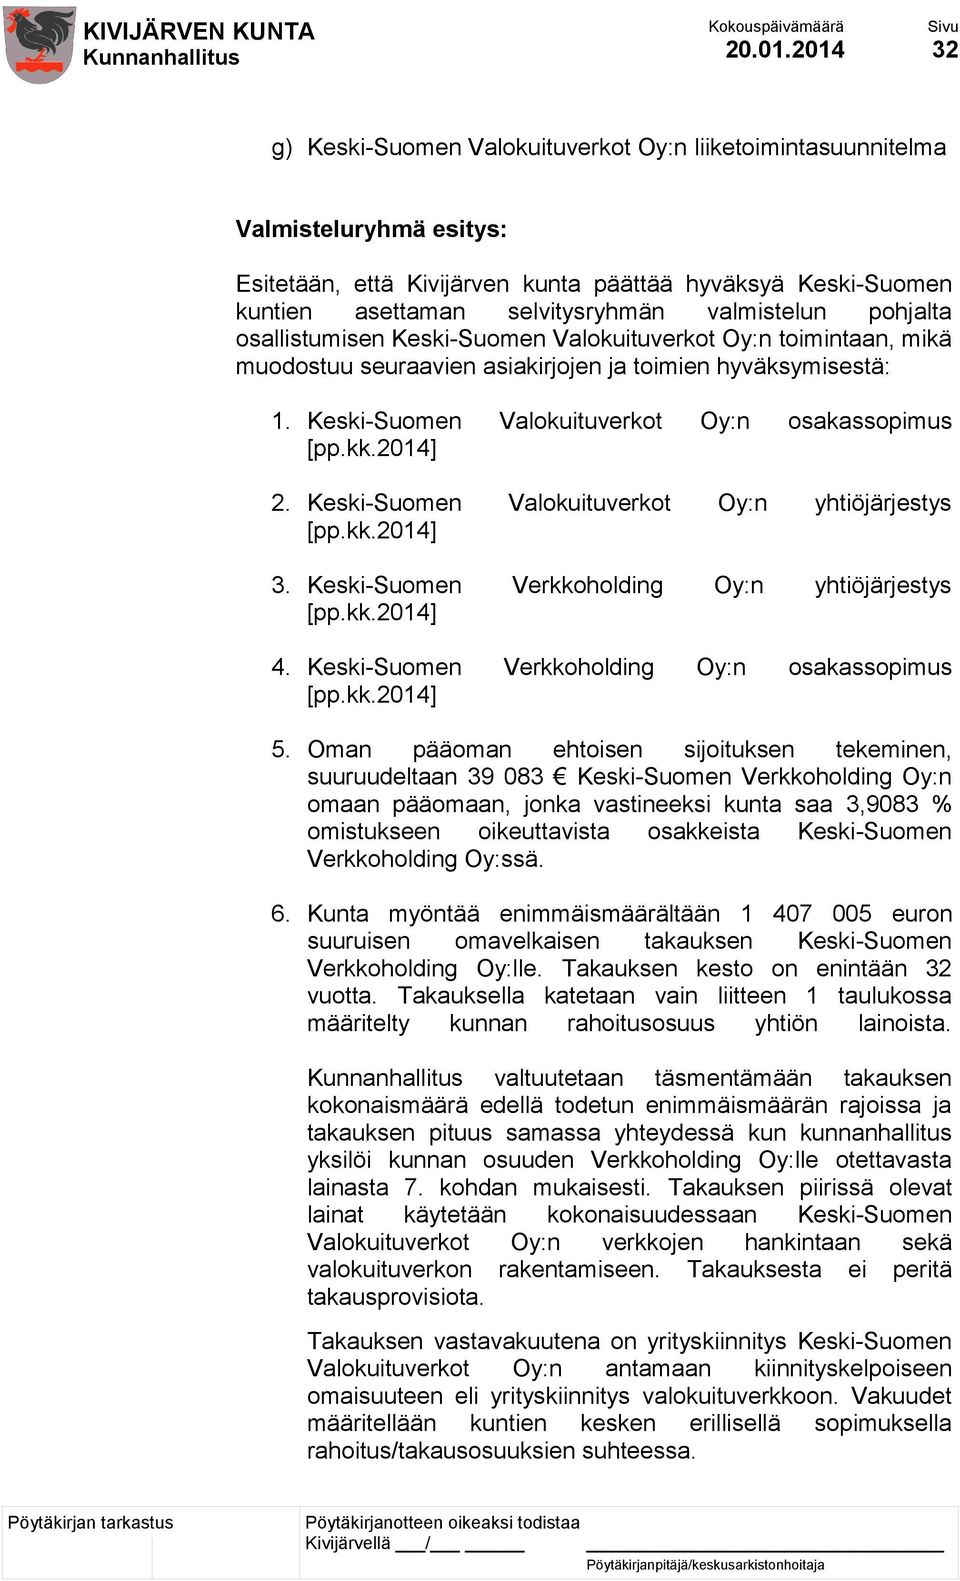 valmistelun pohjalta osallistumisen Keski-Suomen Valokuituverkot Oy:n toimintaan, mikä muodostuu seuraavien asiakirjojen ja toimien hyväksymisestä: 1.